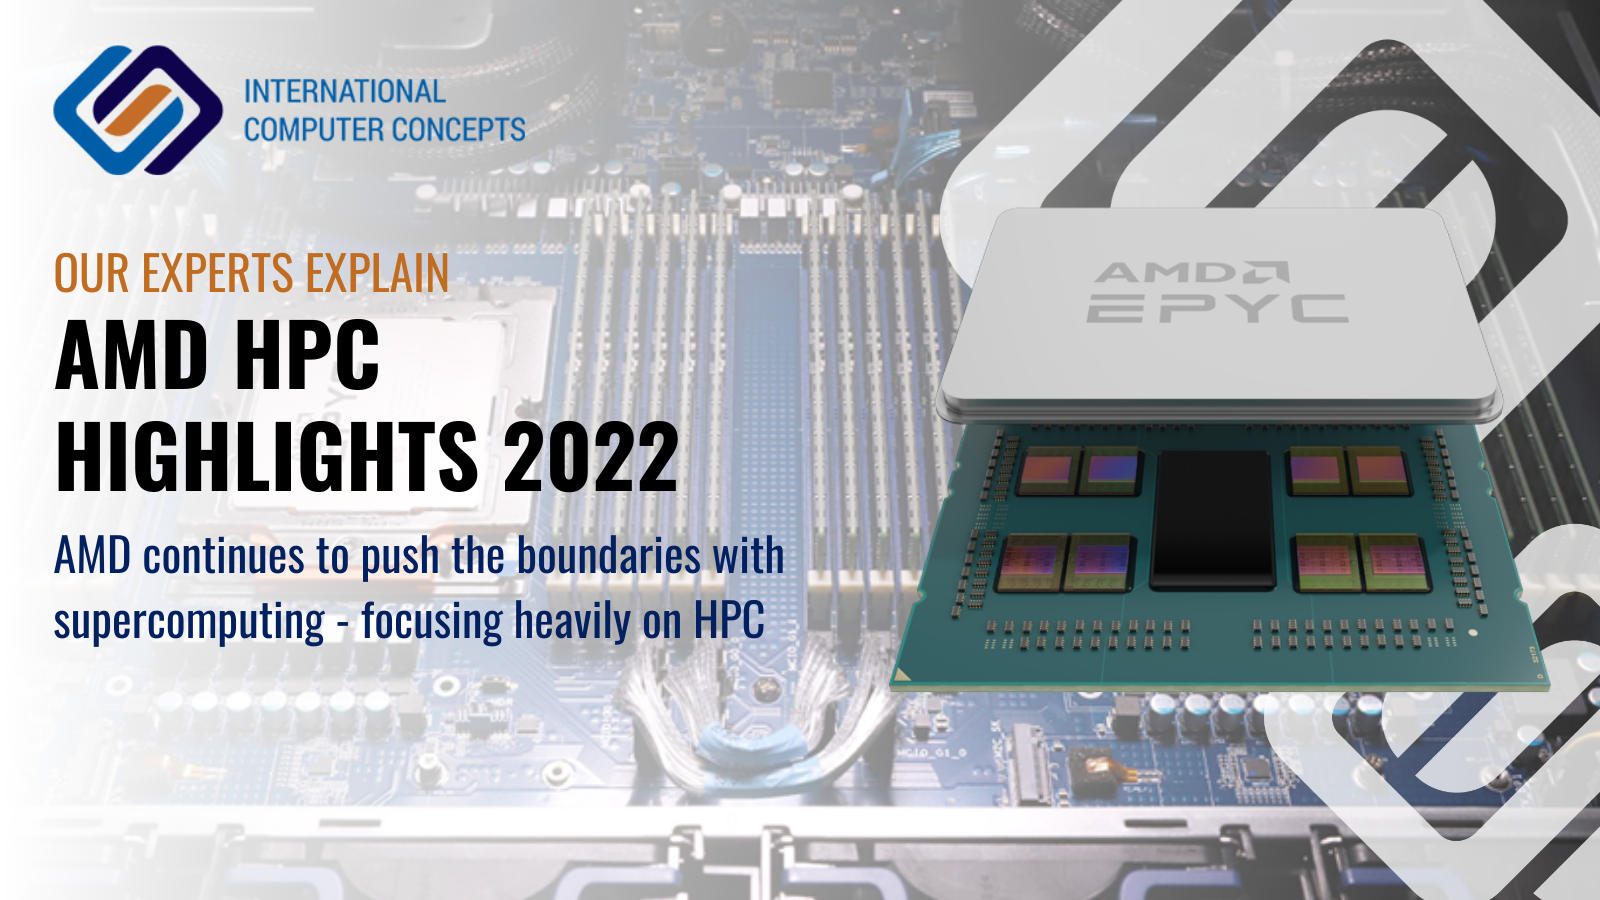 AMD HPC highlights in 2022